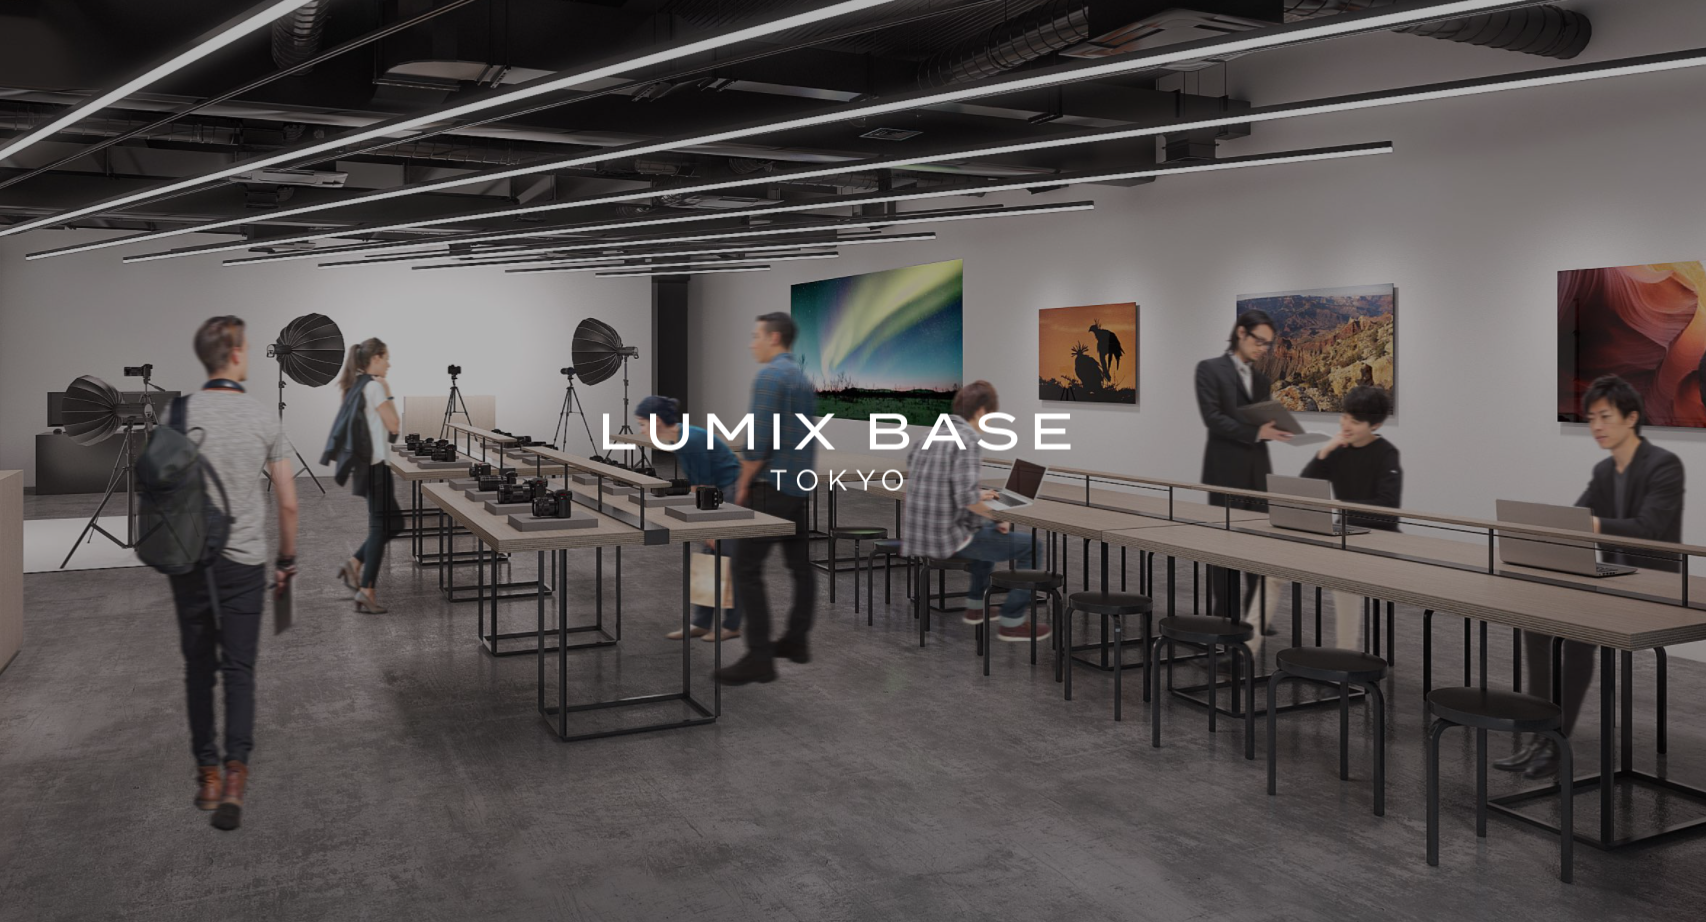 パナソニックがデジタルカメラ「LUMIX」のブランドスペース「LUMIX BASE TOKYO」をオープン